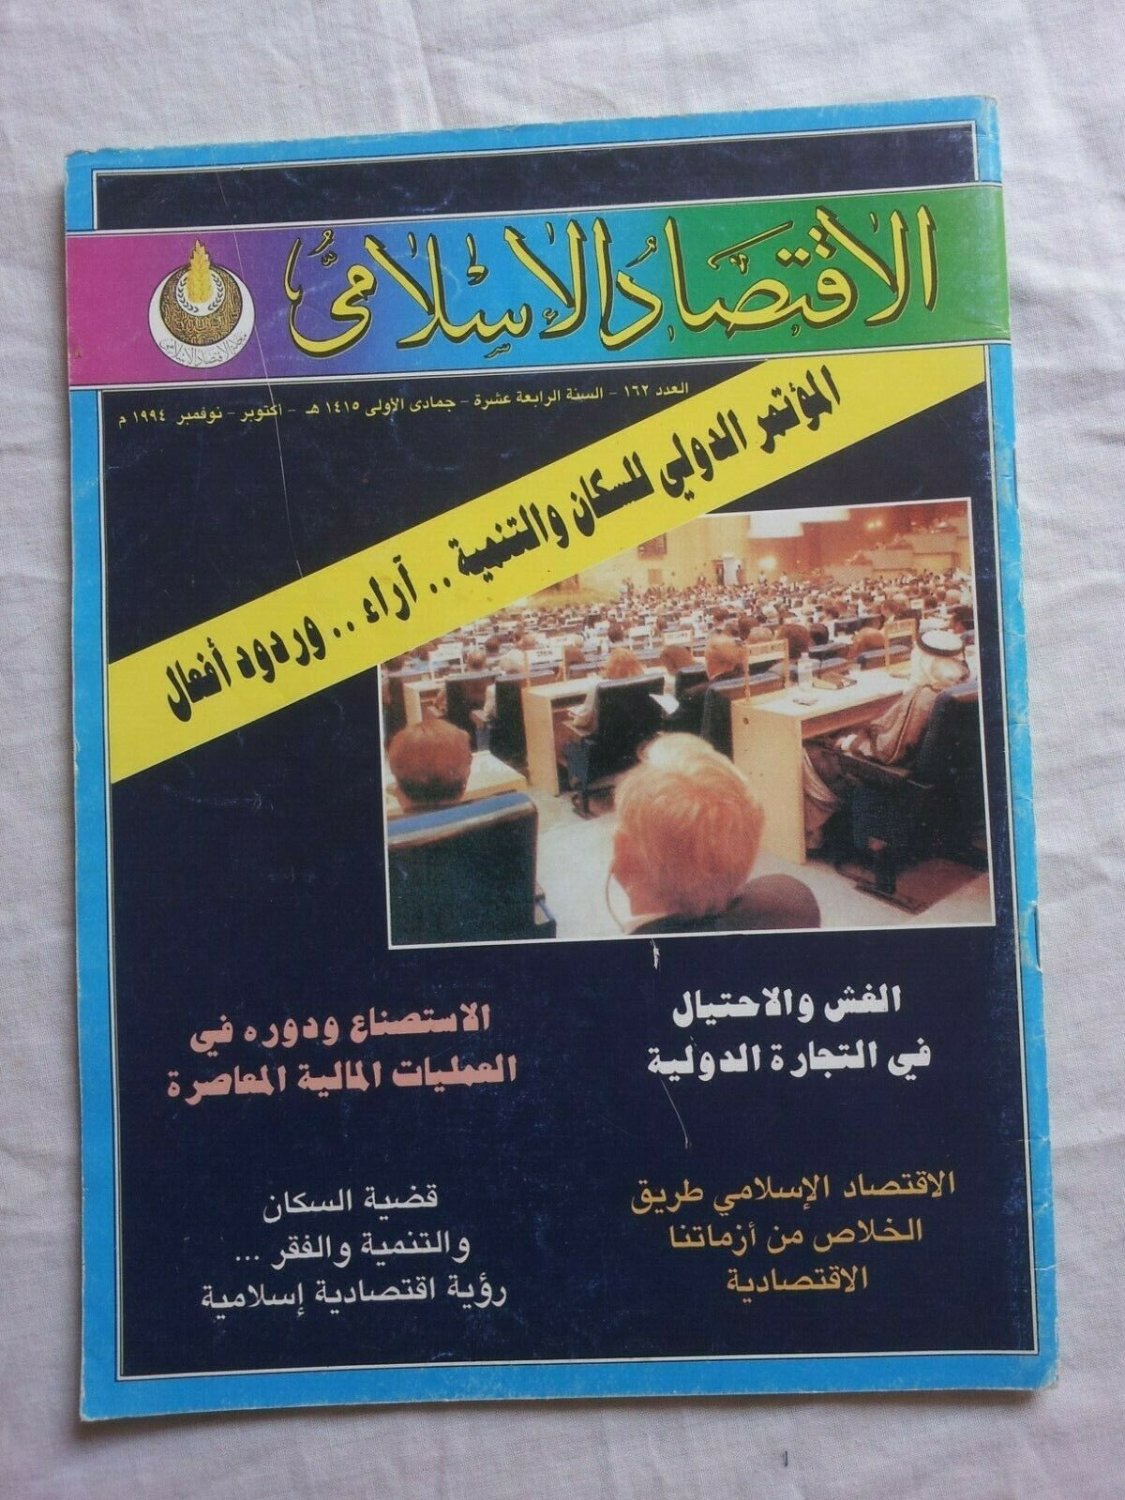 Magazine Islamic Economics Number 162 Year 14 Jumada I 1415 October, 1994